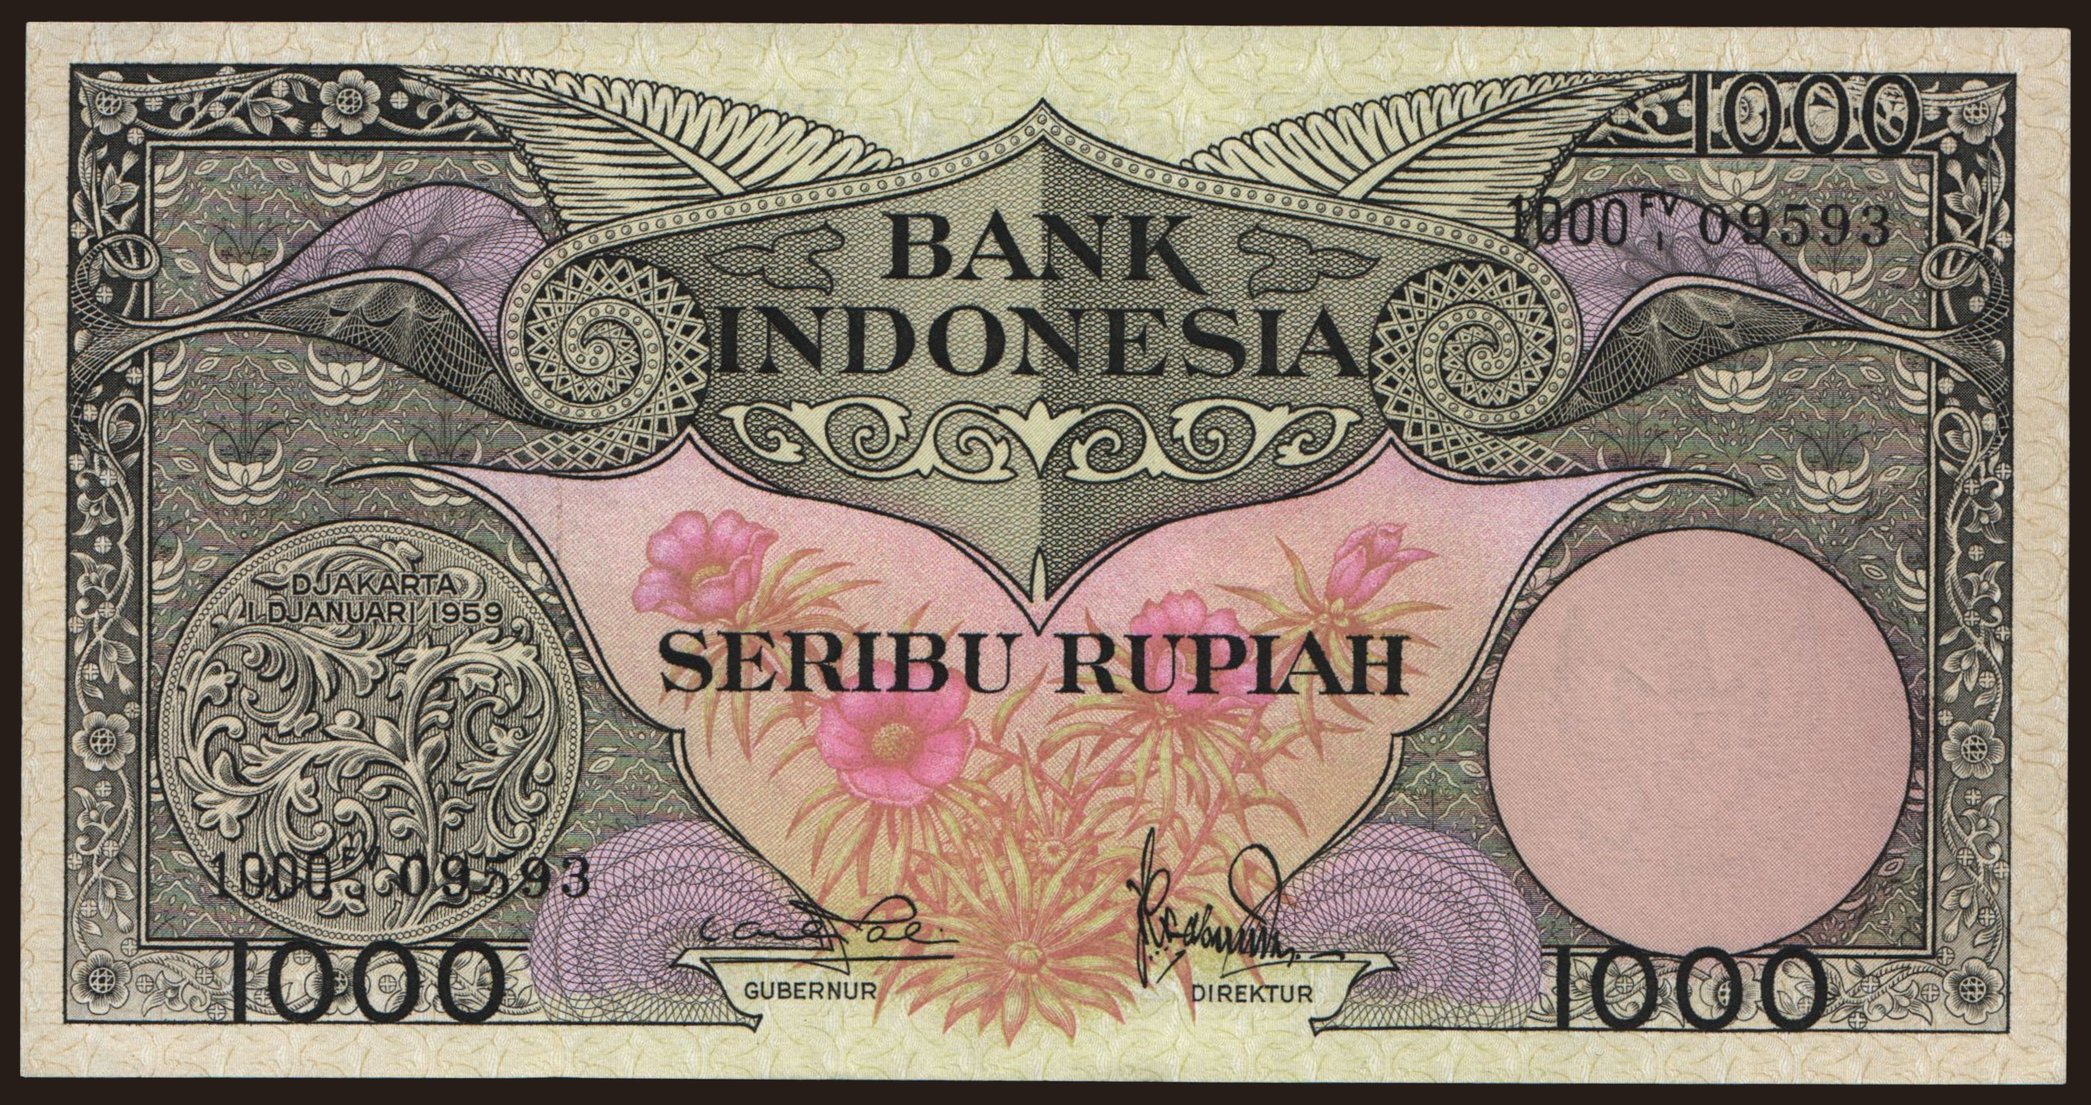 1000 rupiah, 1959